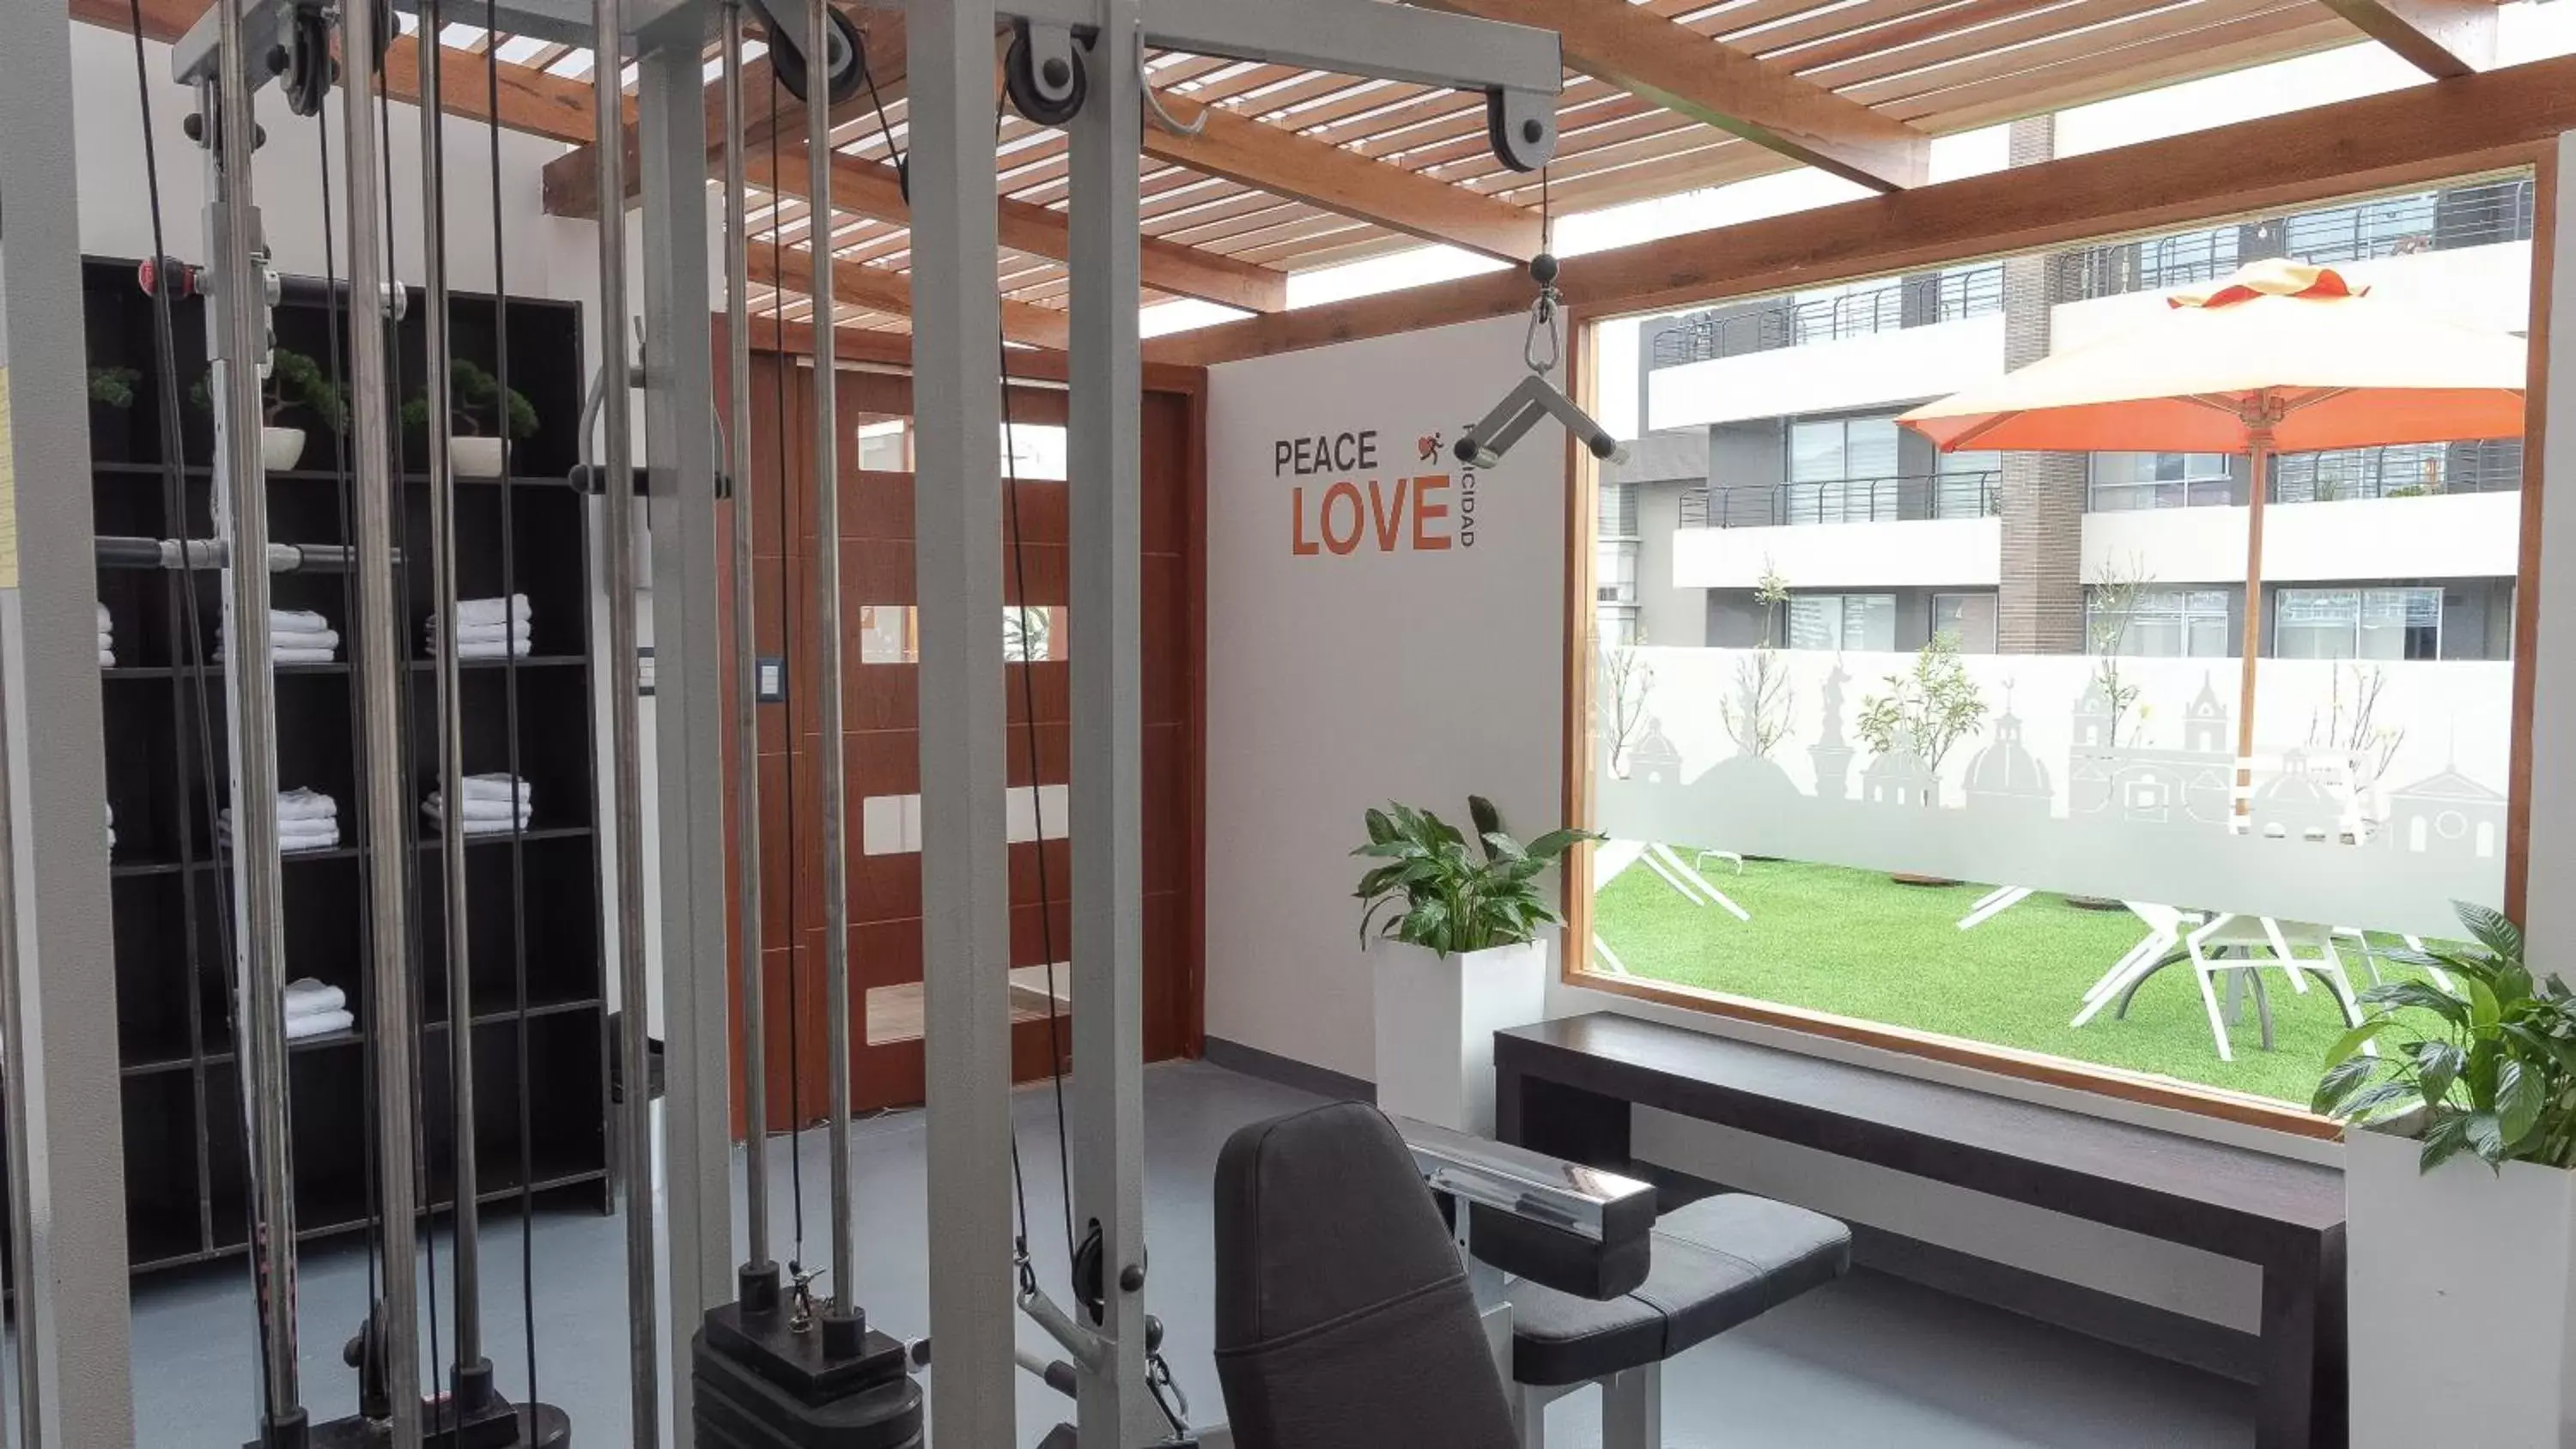 Fitness centre/facilities in Hotel Finlandia